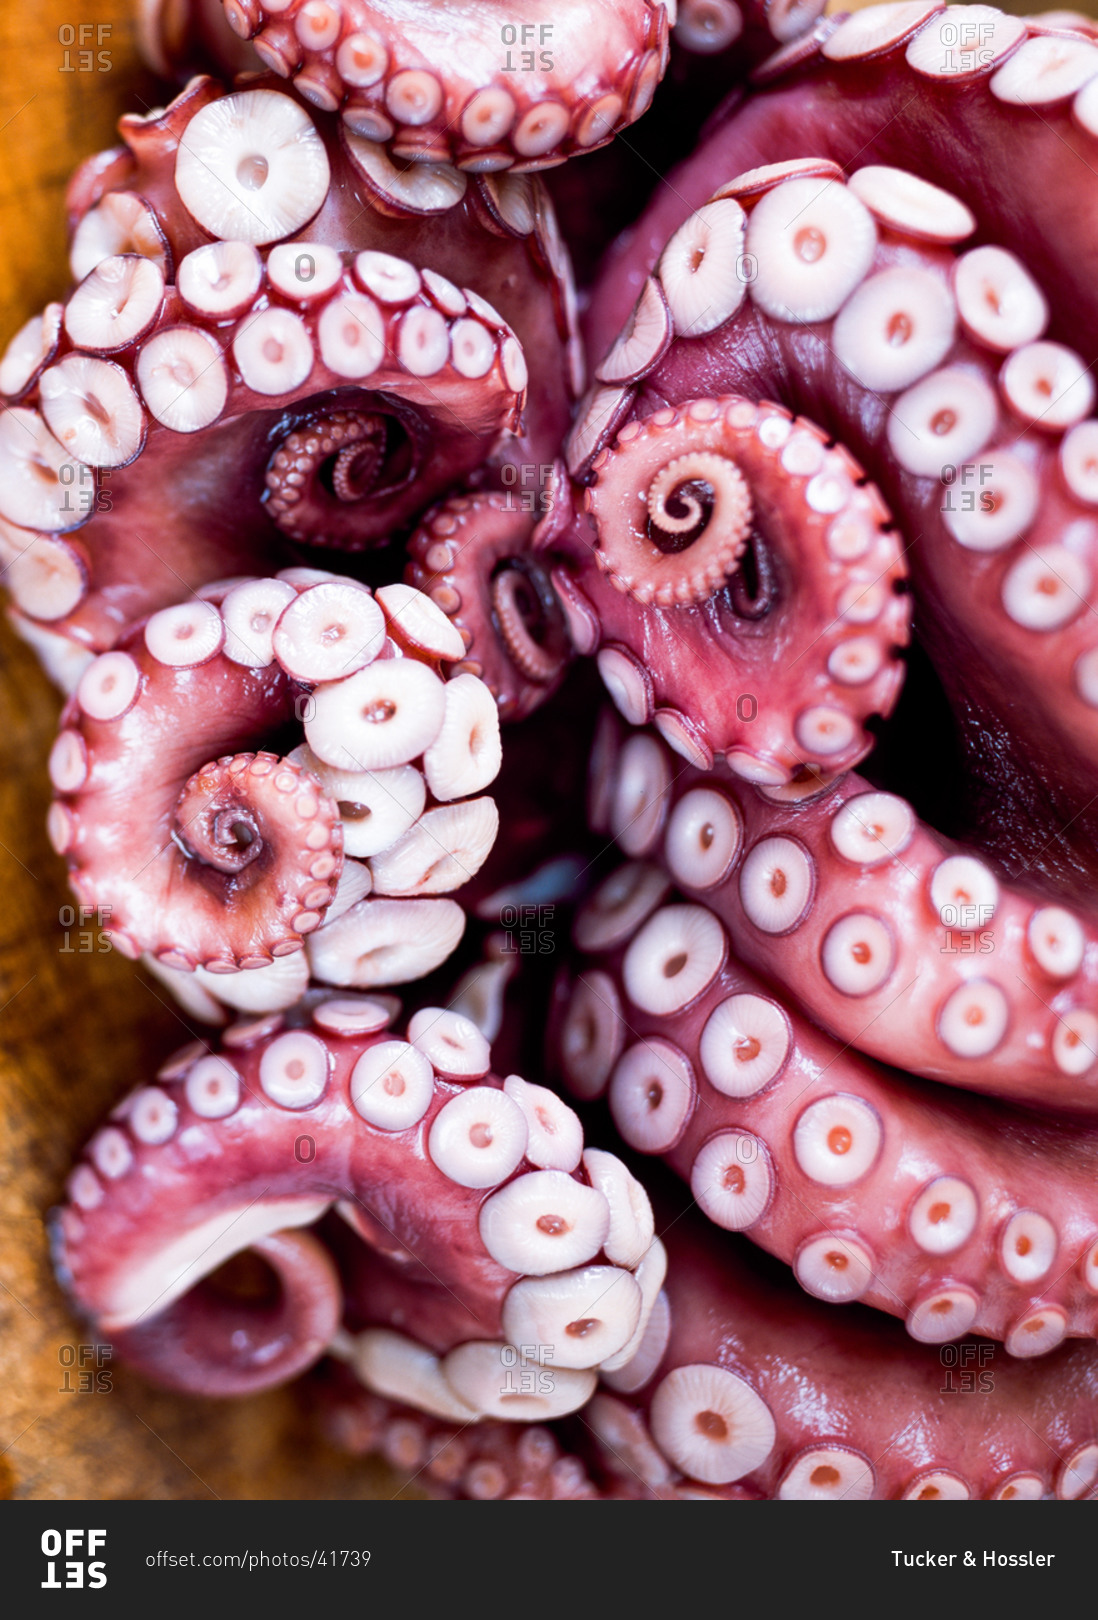 octopus octopus tentacles